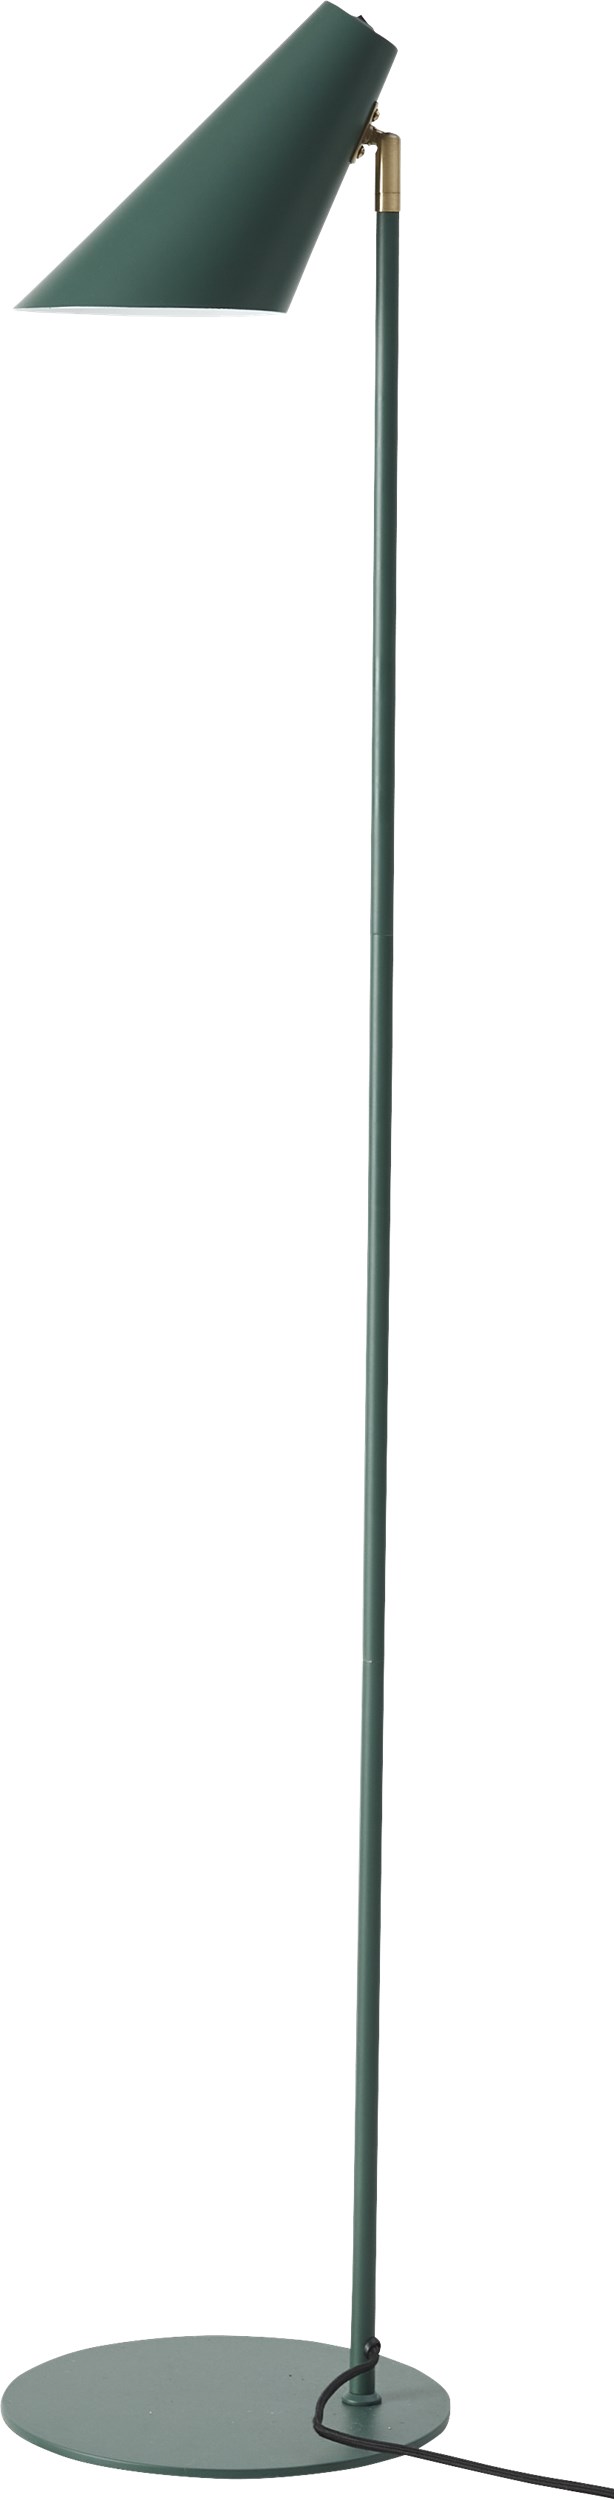 Cale Gulvlampe 135 x 15,5 cm - Grøn metalskærm/base, stang i grøn/messing og sort tekstilledning